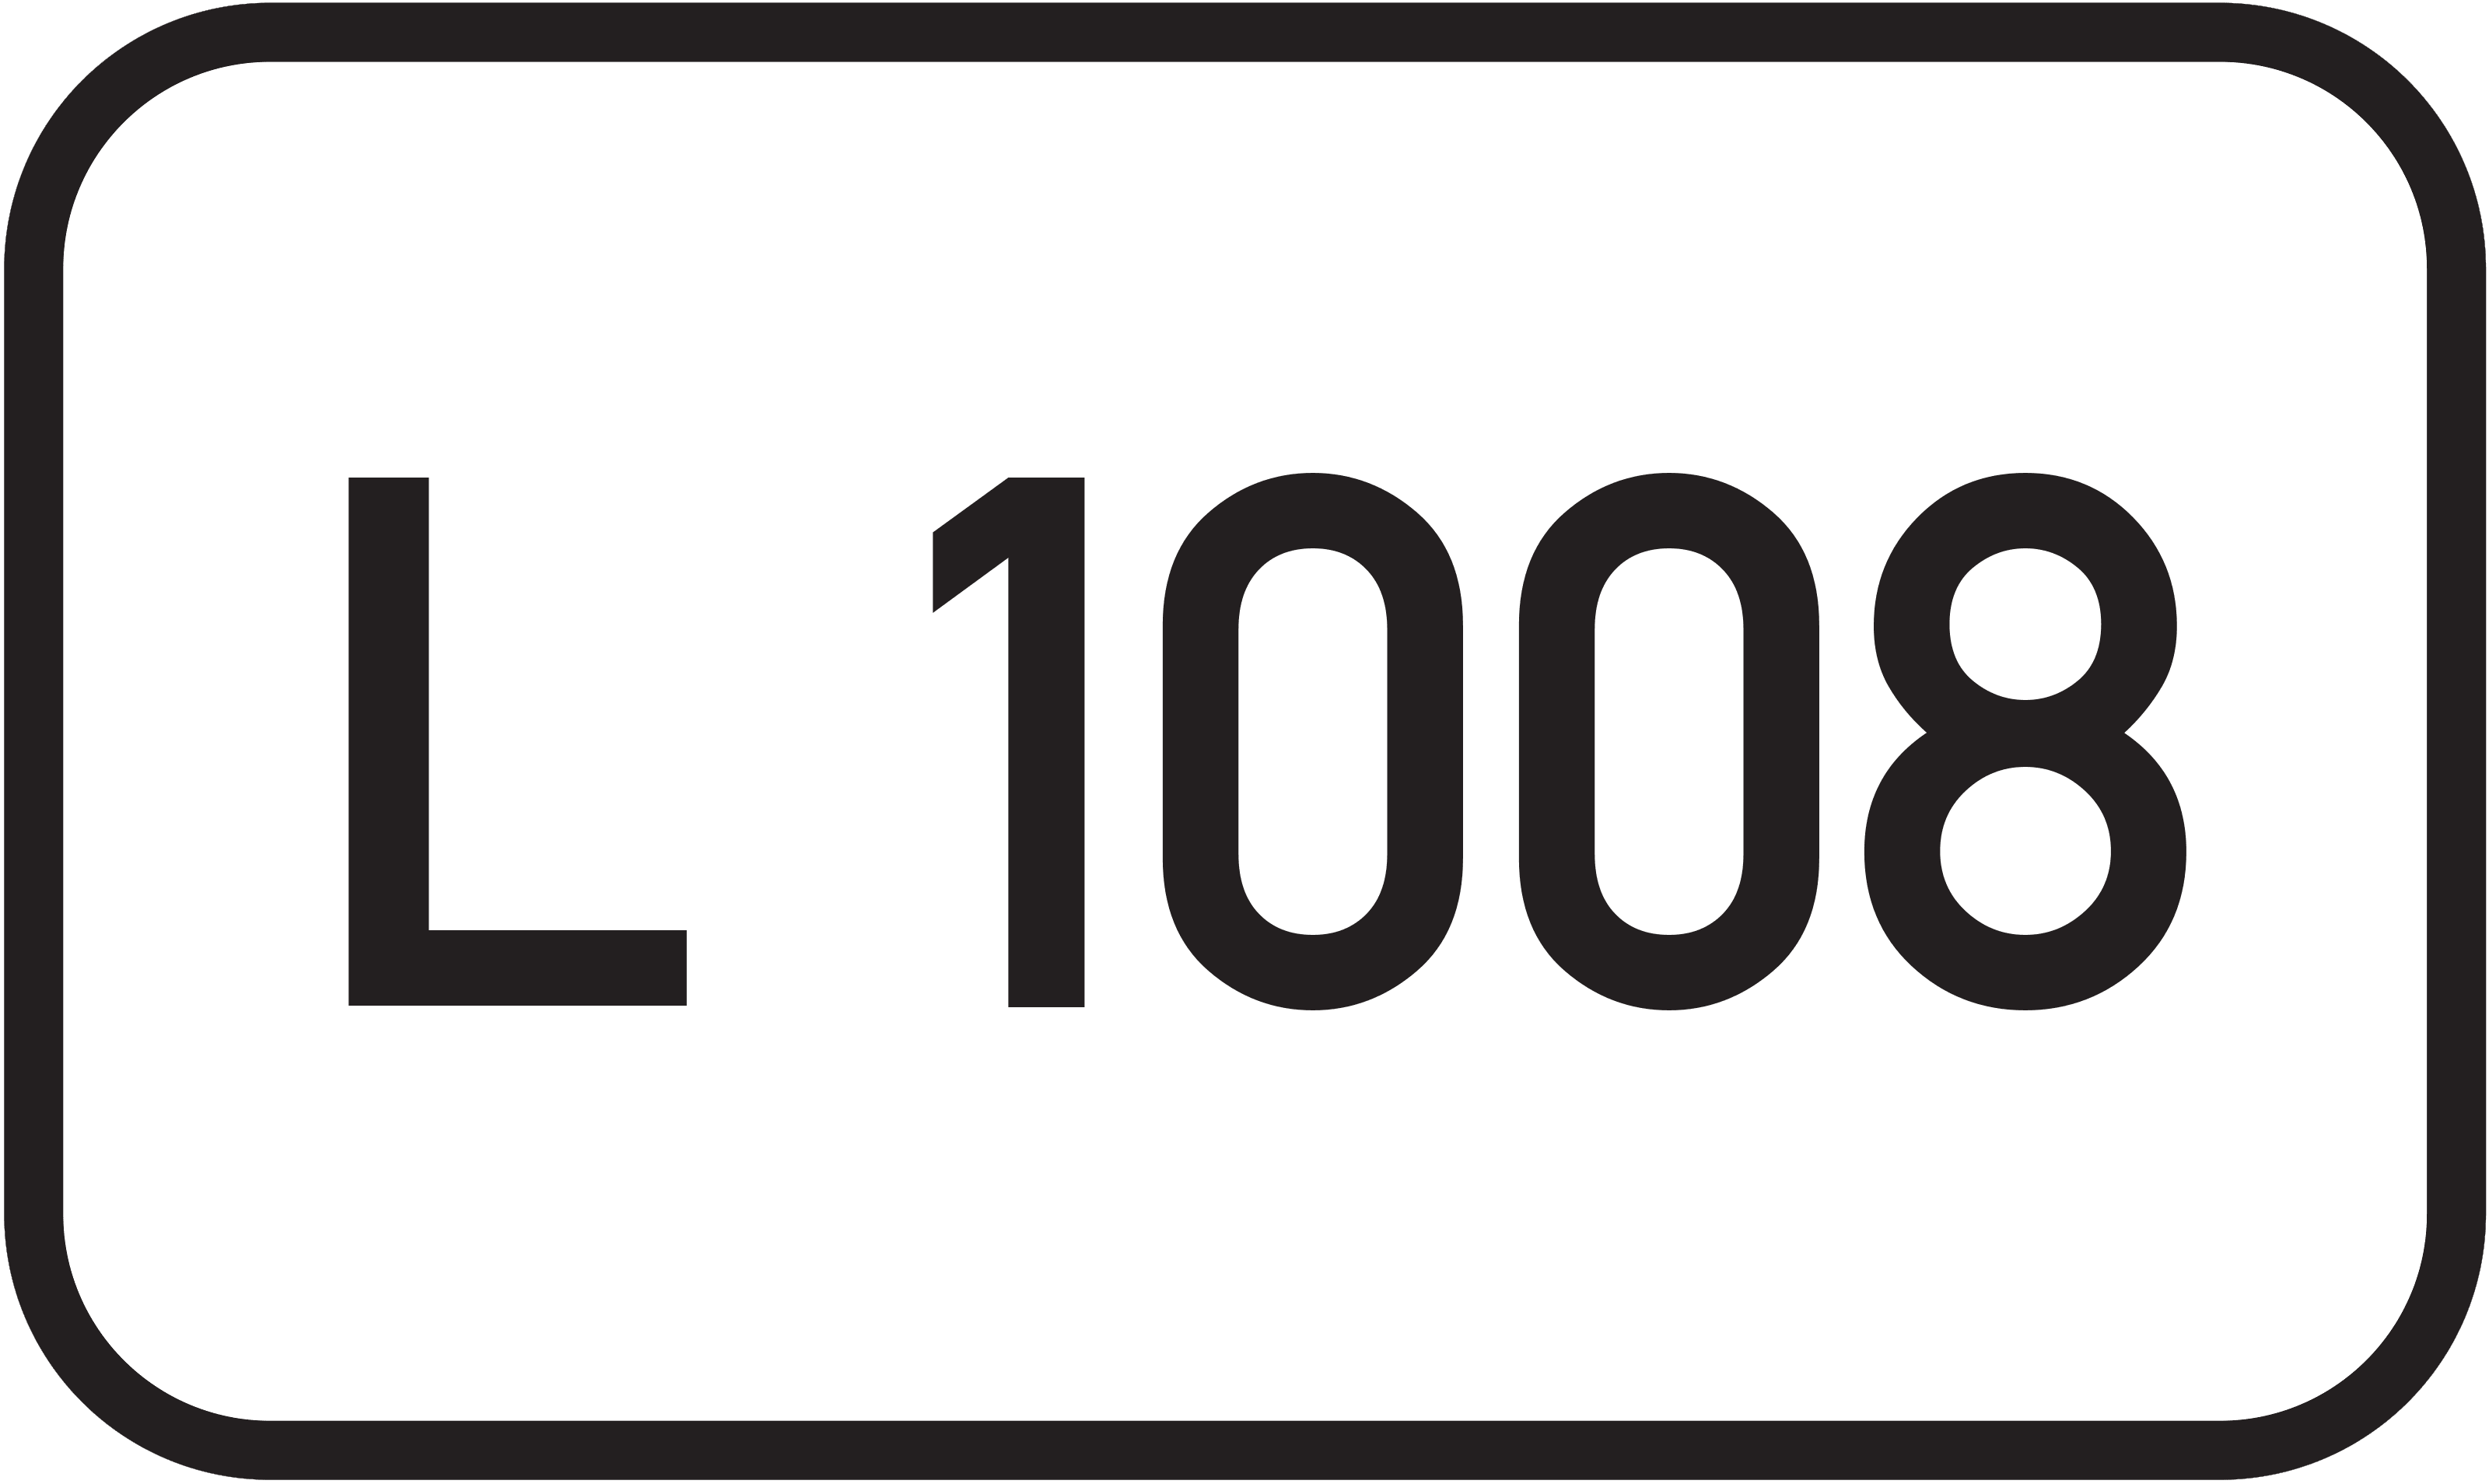 Landesstraße L 1008